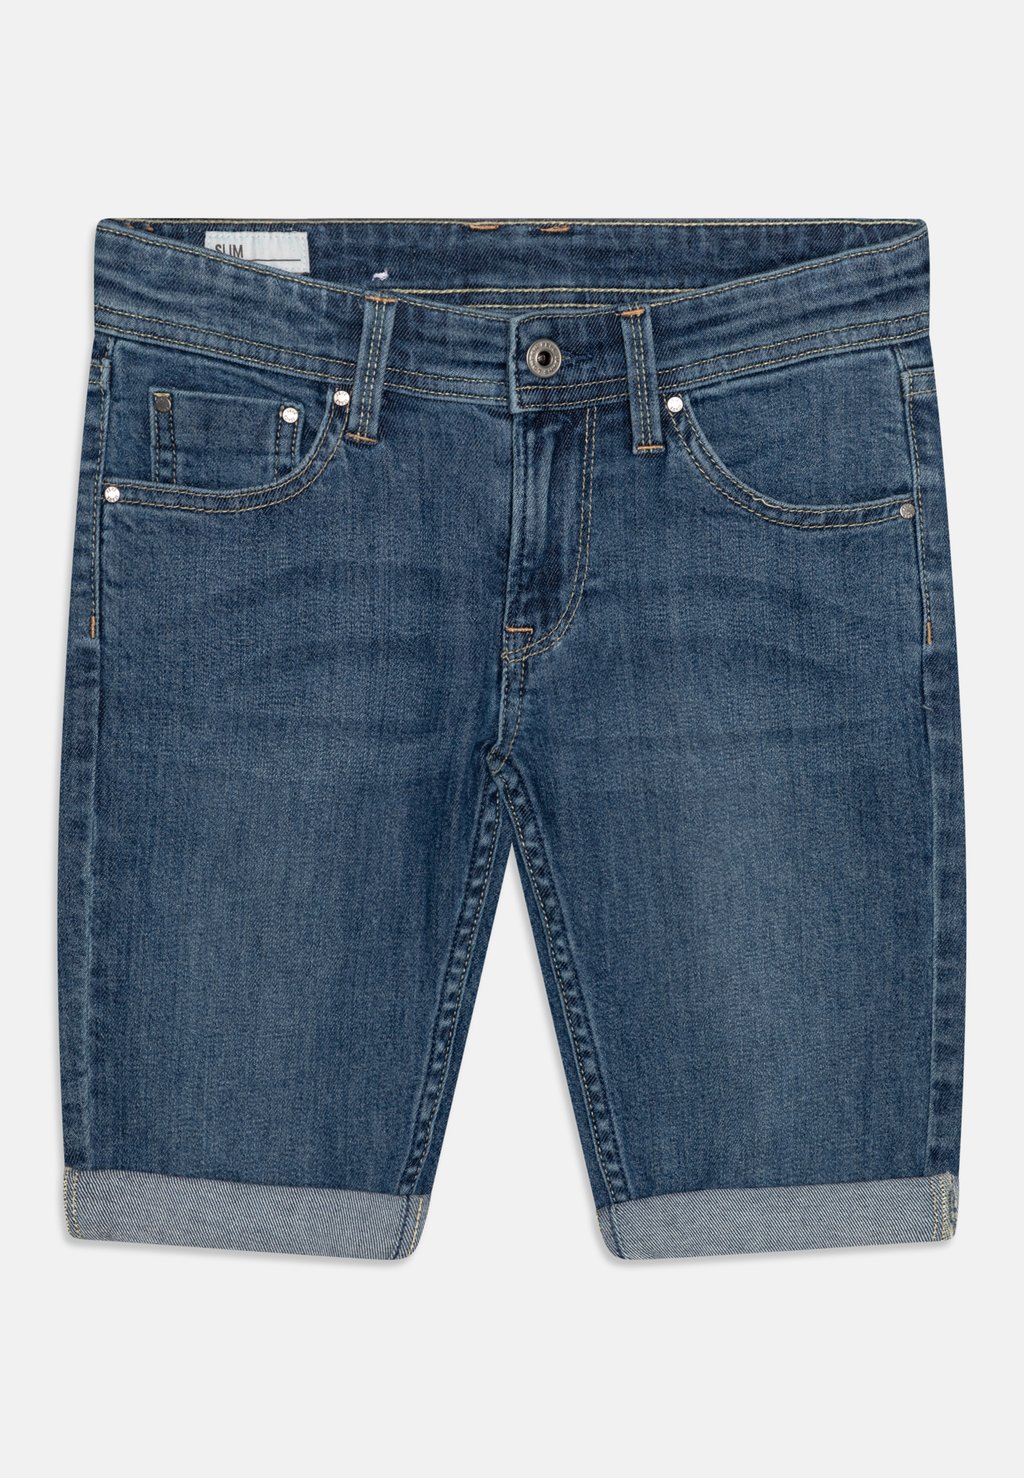 Джинсовые шорты SLIM JR Pepe Jeans, цвет denim